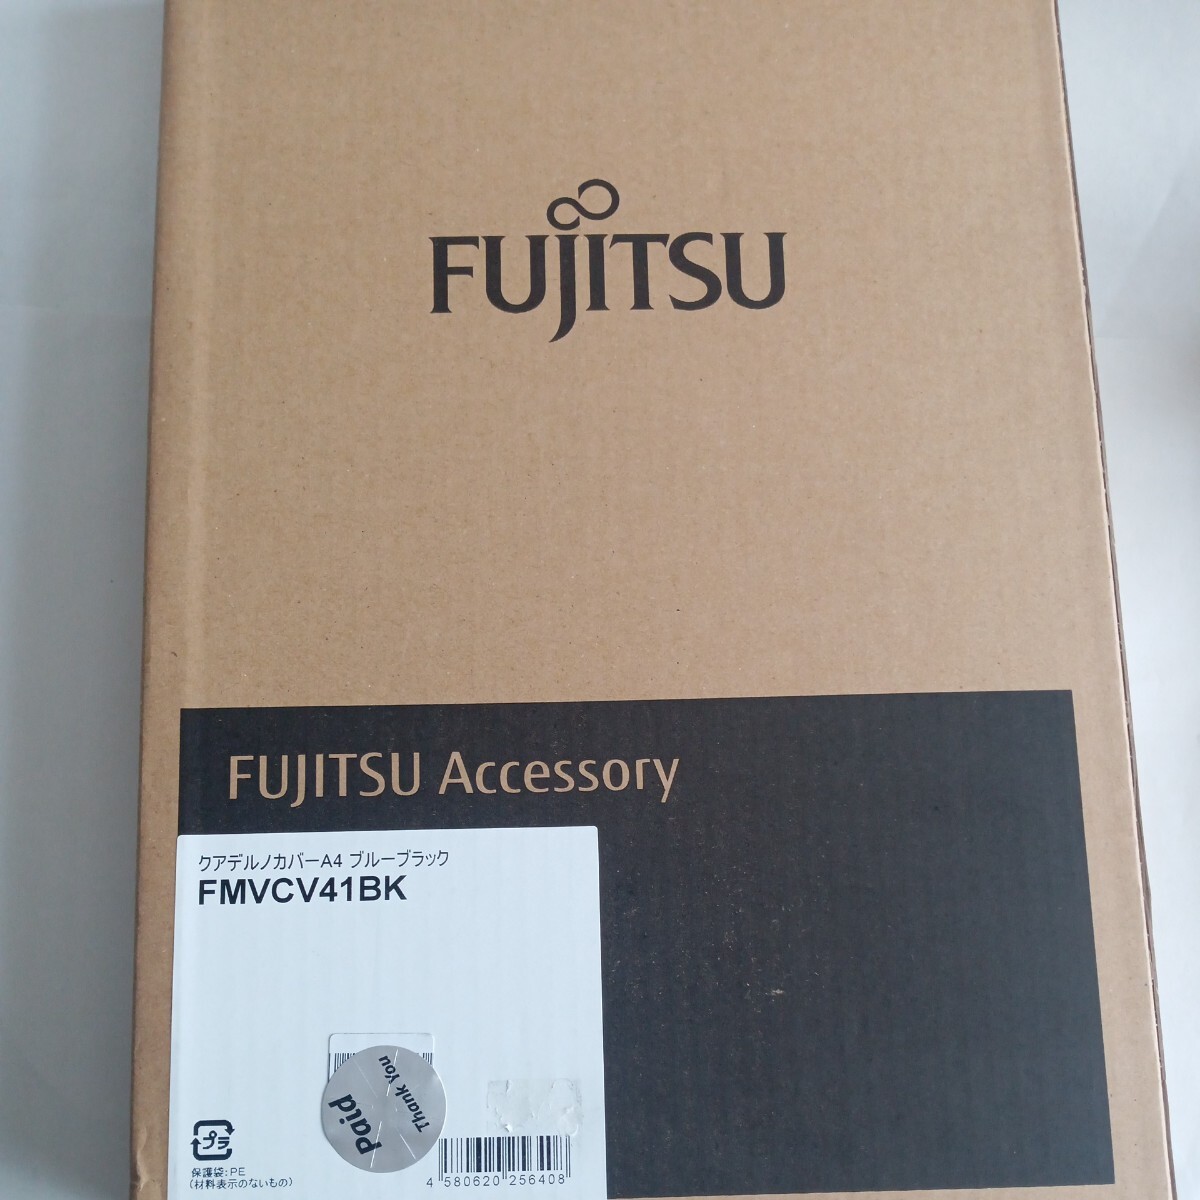  без доставки Fujitsu ka Dell no покрытие A4 QUADERNO специальный покрытие blue black FMVCV41BK